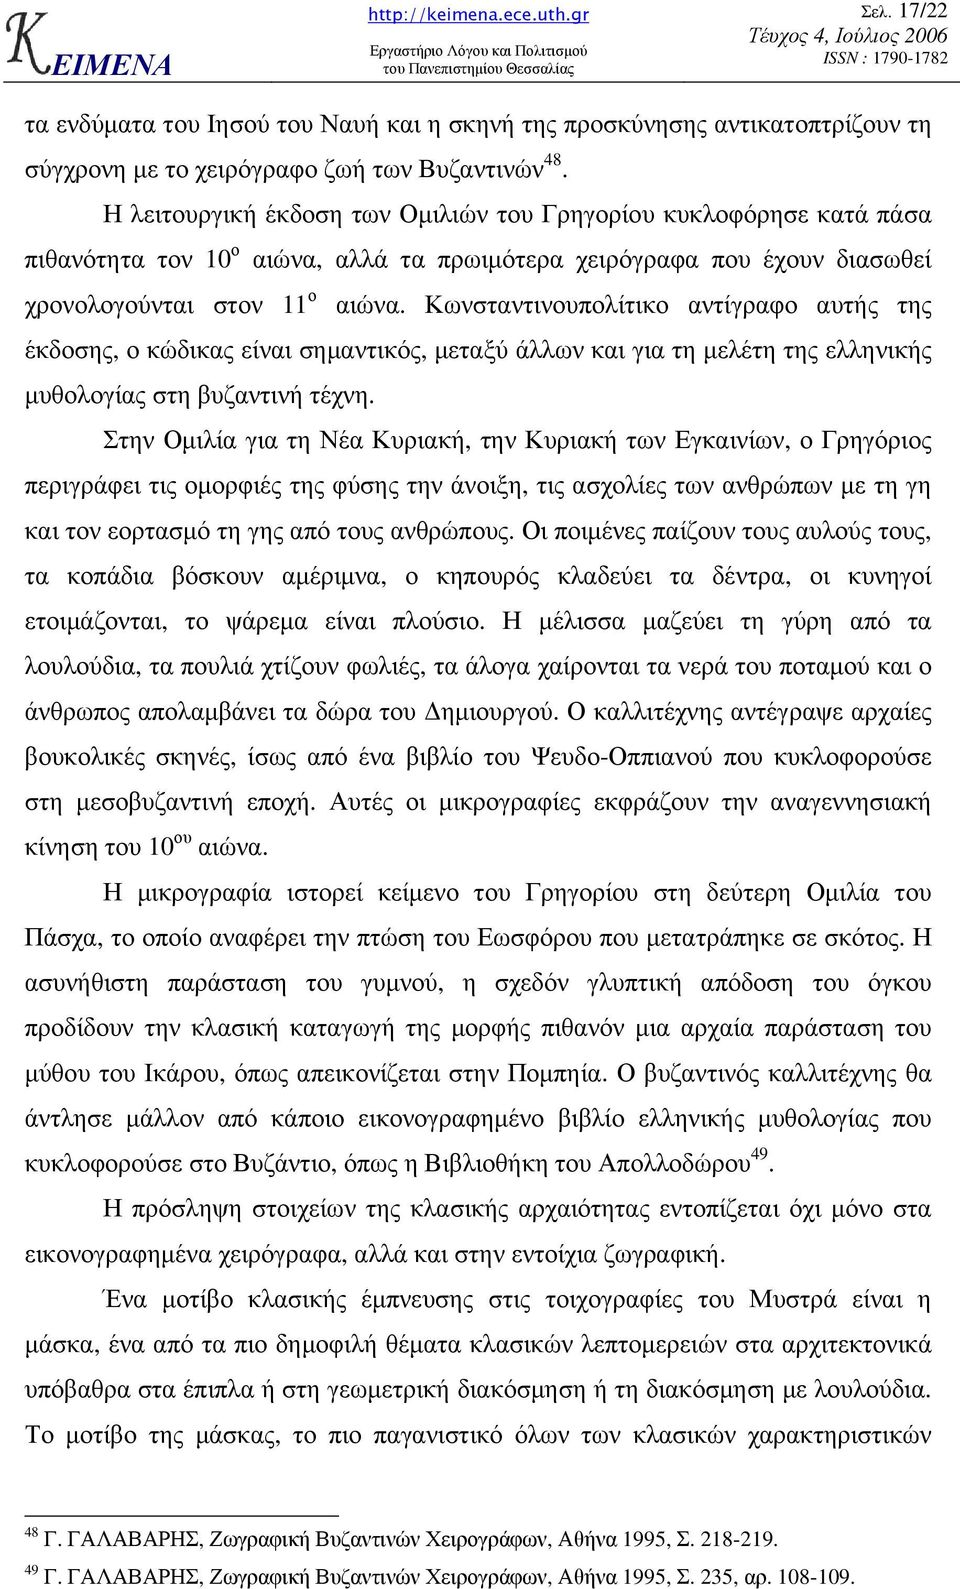 Κωνσταντινουπολίτικο αντίγραφο αυτής της έκδοσης, ο κώδικας είναι σηµαντικός, µεταξύ άλλων και για τη µελέτη της ελληνικής µυθολογίας στη βυζαντινή τέχνη.